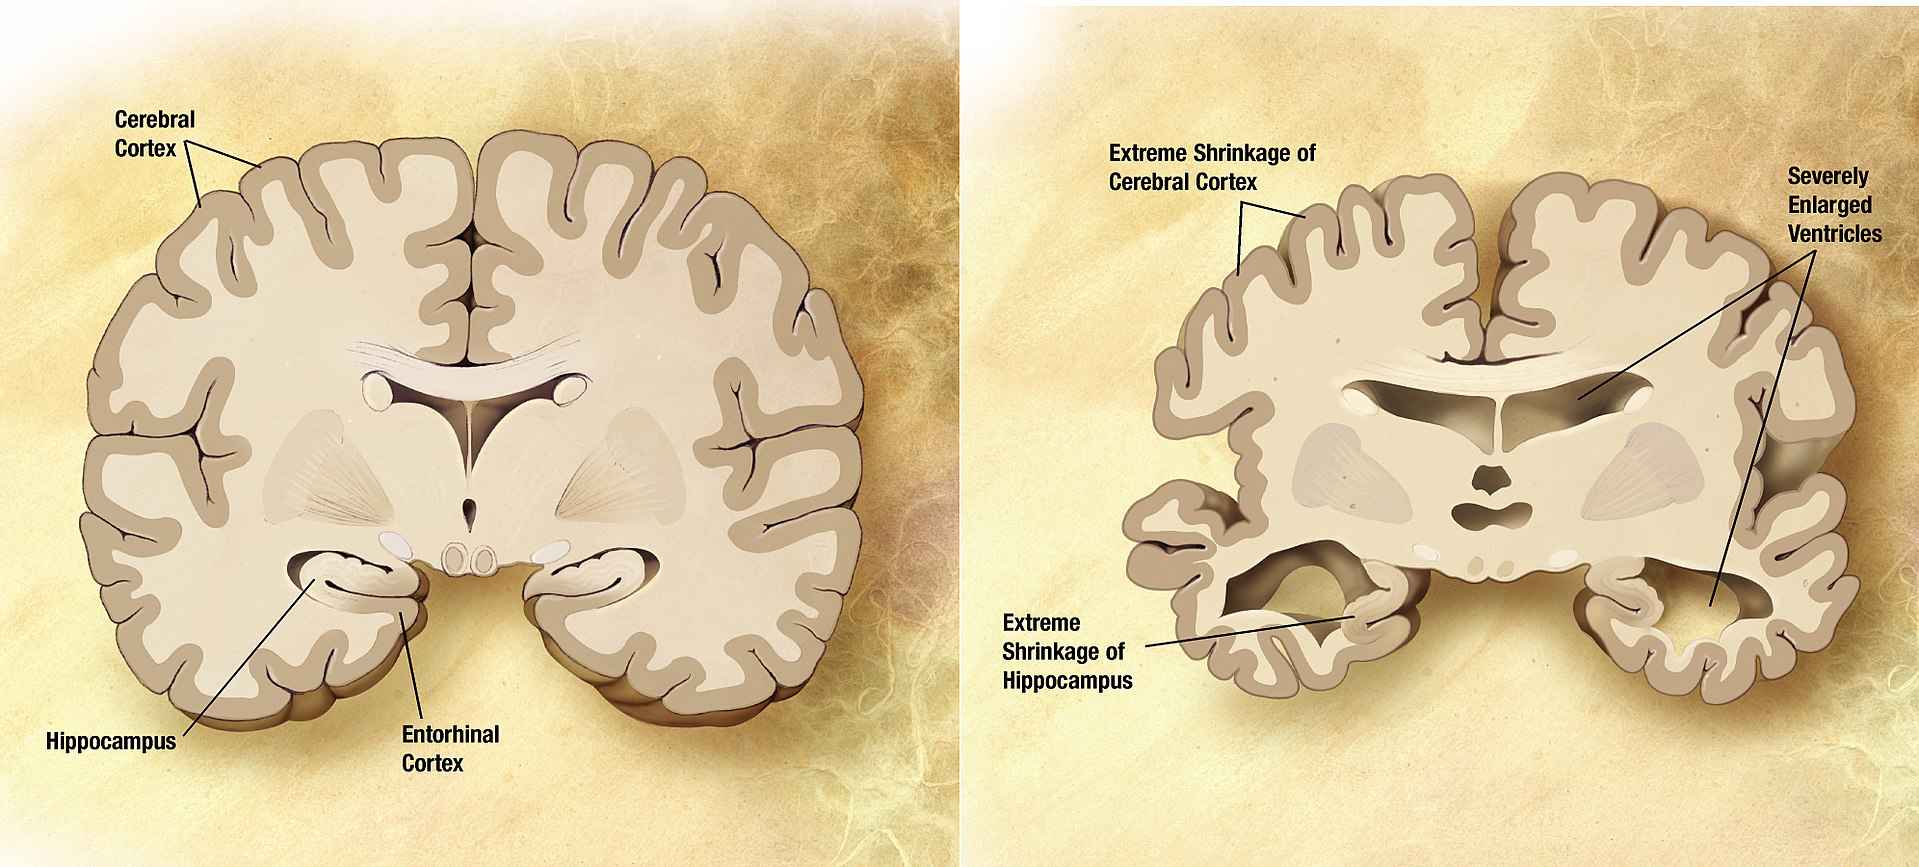 Comparação entre um cérebro idoso normal (esquerda) e o cérebro de uma pessoa com Alzheimer (direita)